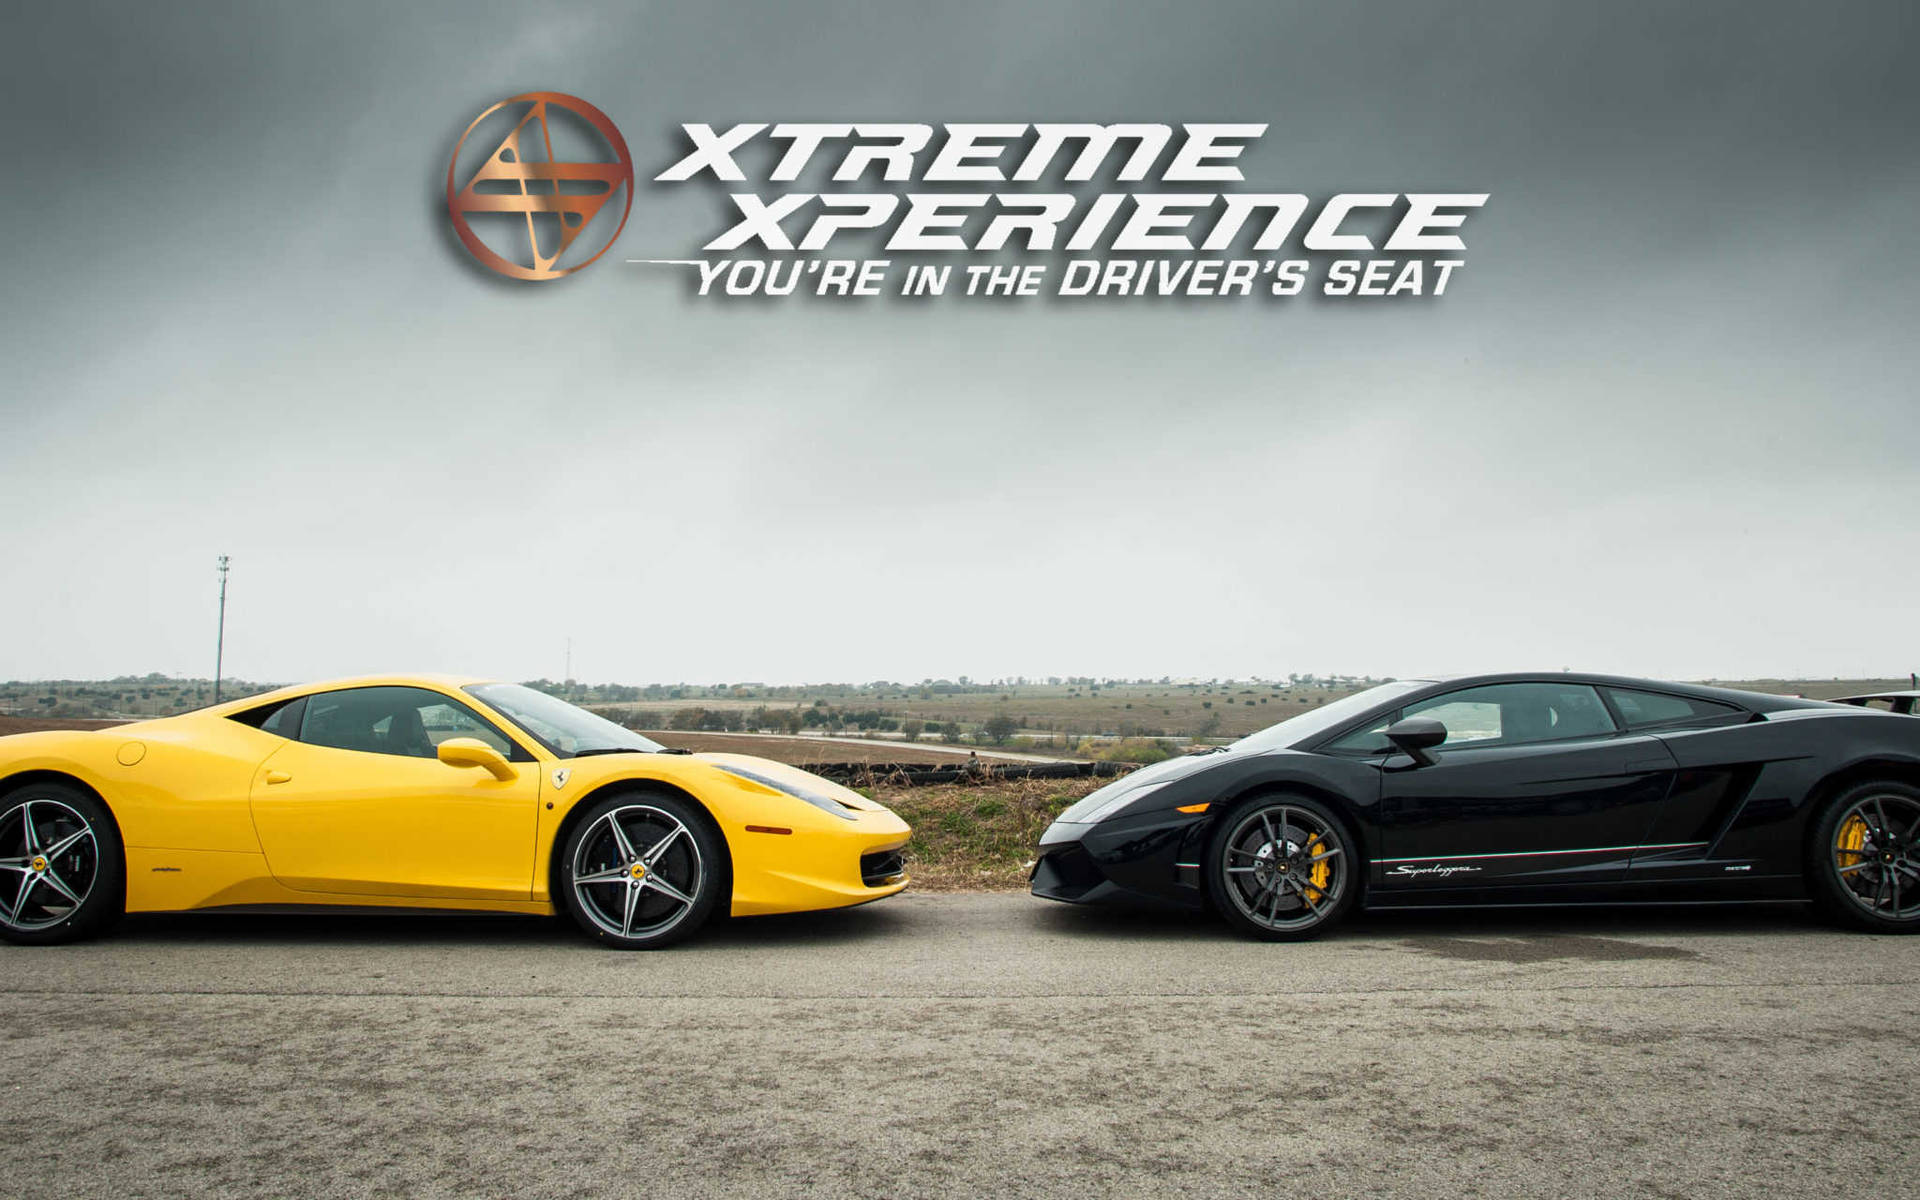 Ferrari Vs Lamborghini Xtreme Xperience Background